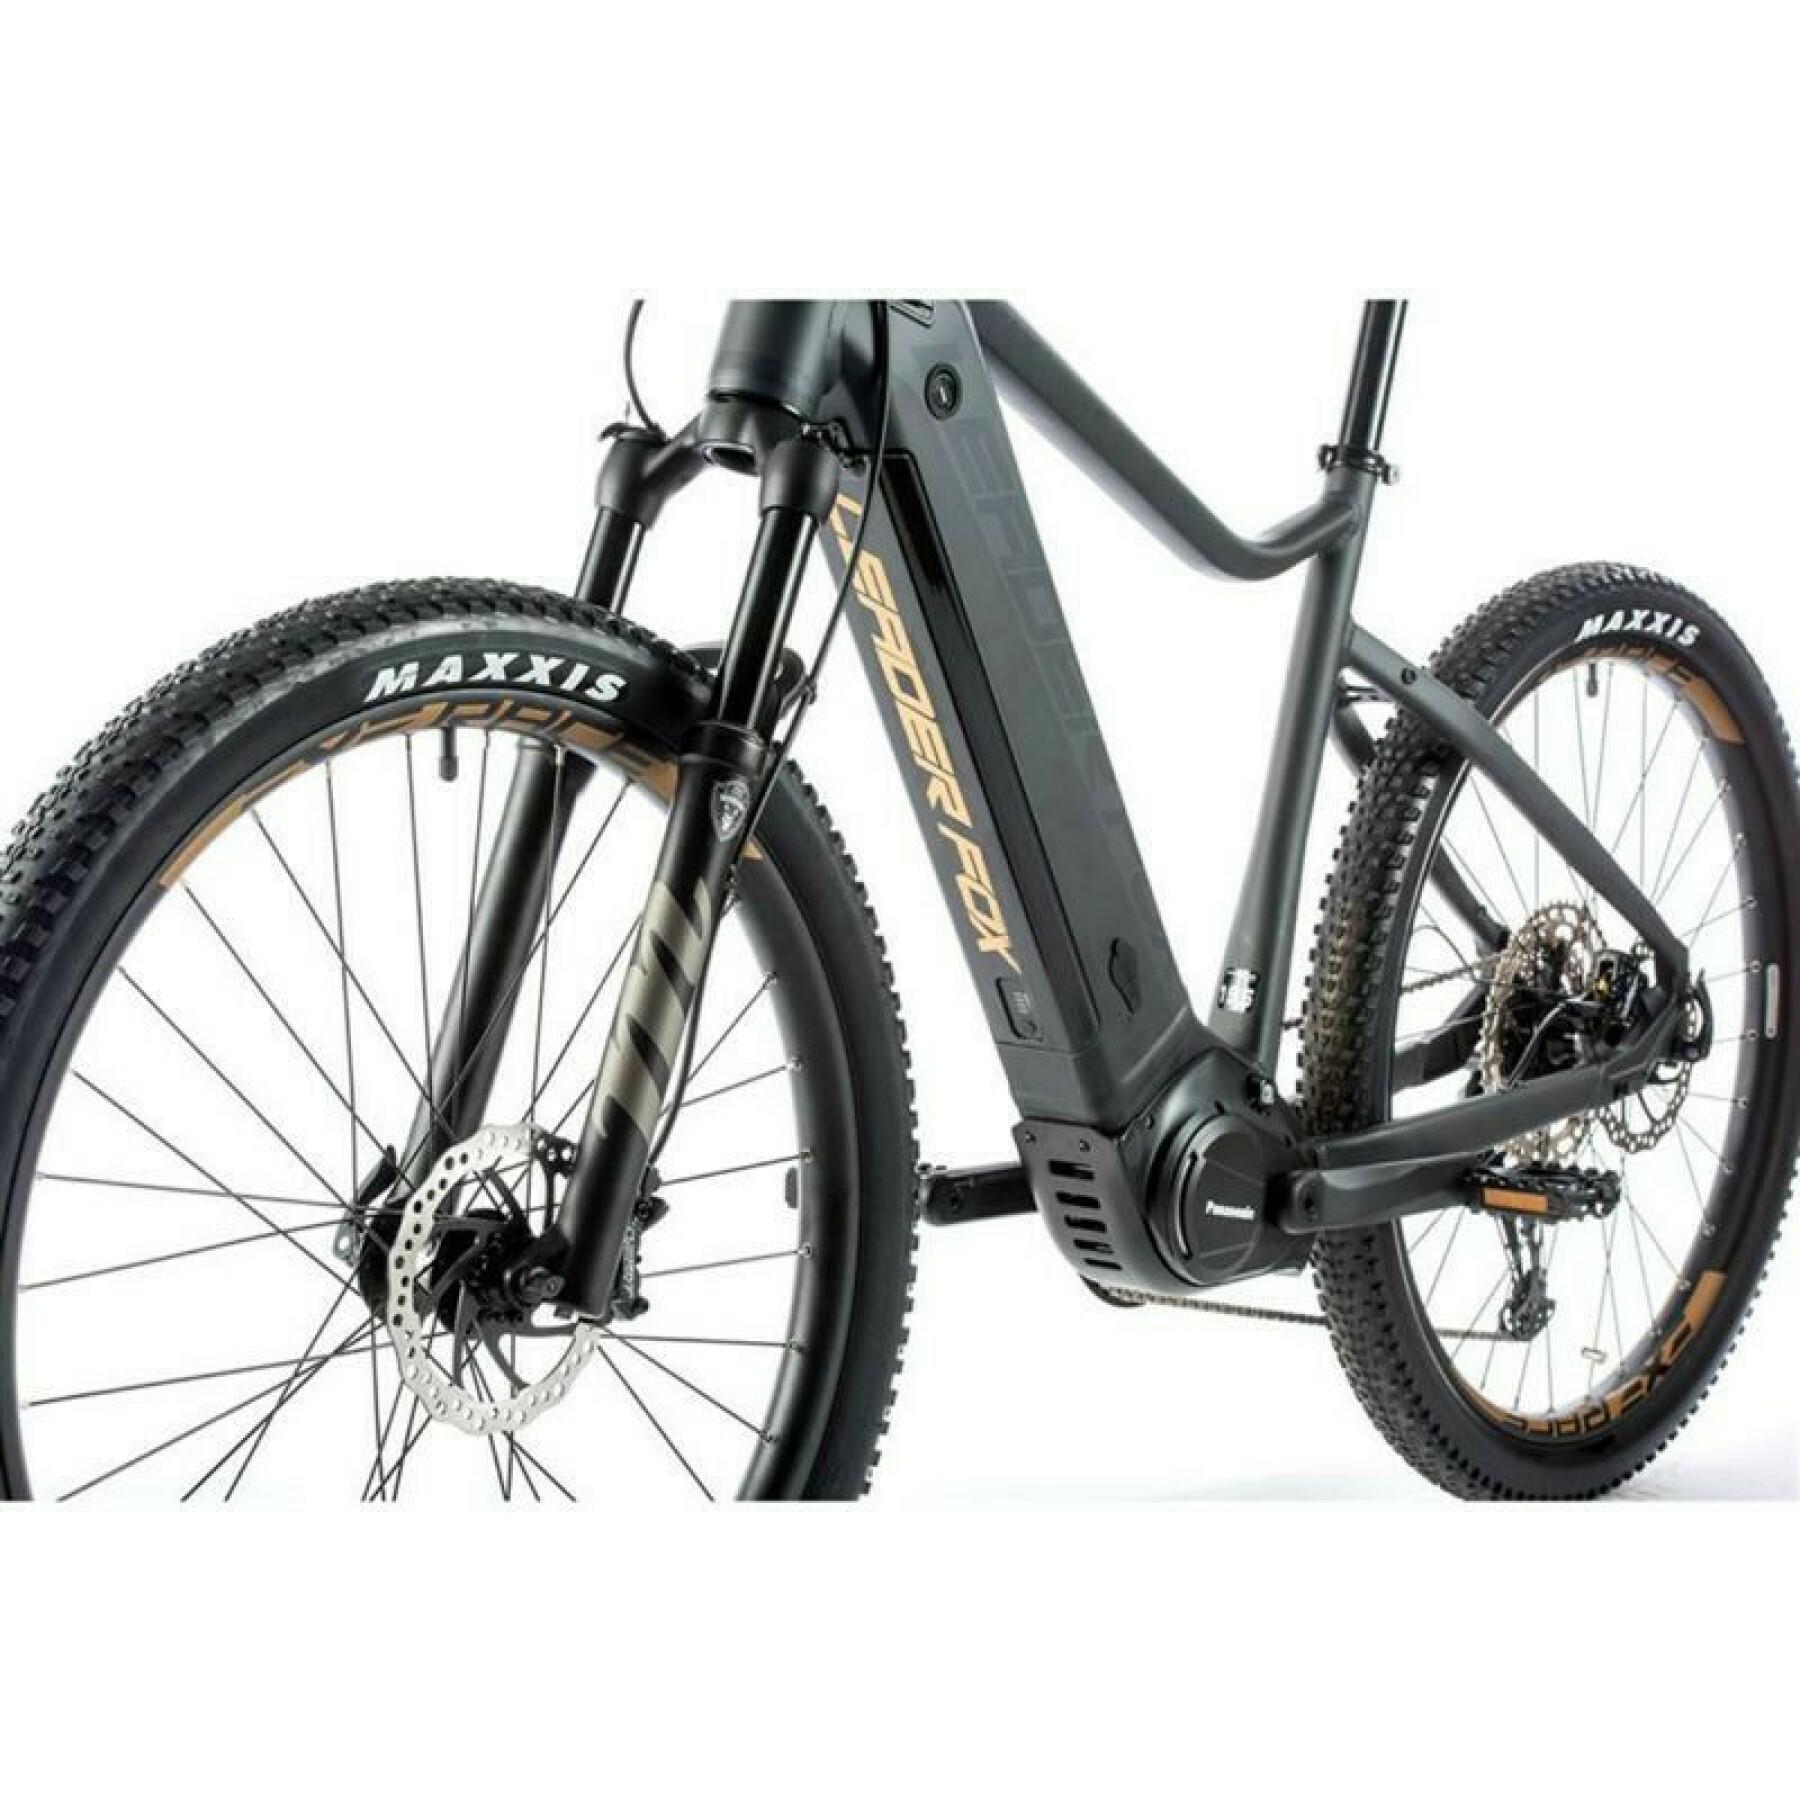 Elektrische fiets Leader Fox Orton 2021 27,5"